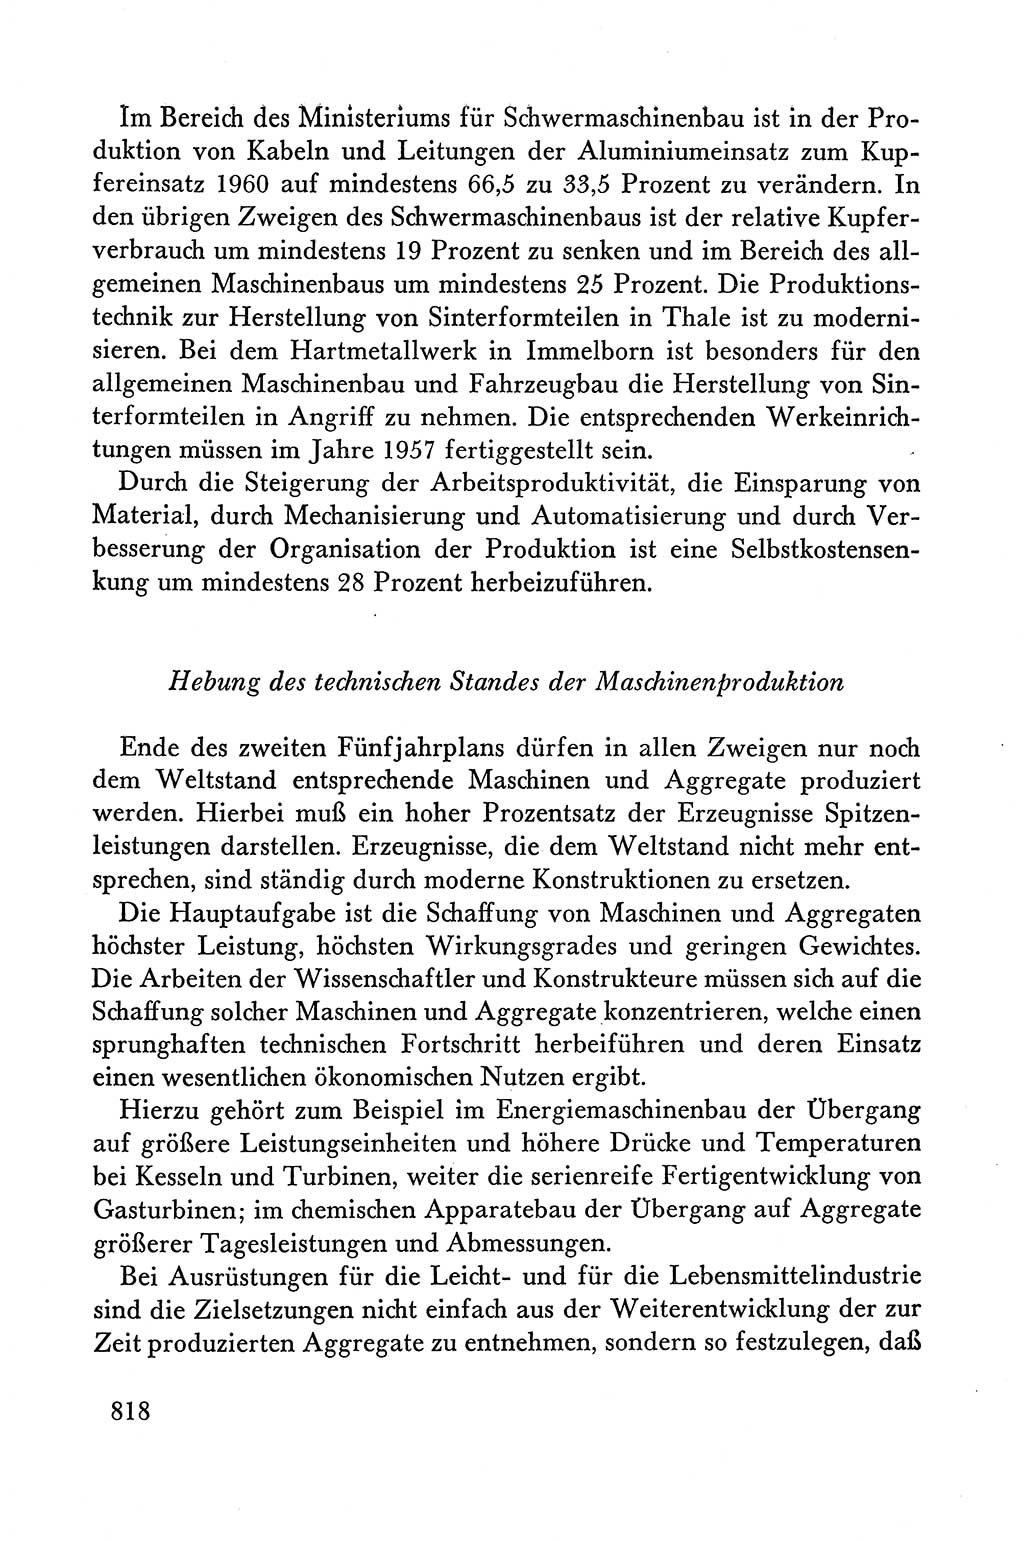 Dokumente der Sozialistischen Einheitspartei Deutschlands (SED) [Deutsche Demokratische Republik (DDR)] 1958-1959, Seite 818 (Dok. SED DDR 1958-1959, S. 818)